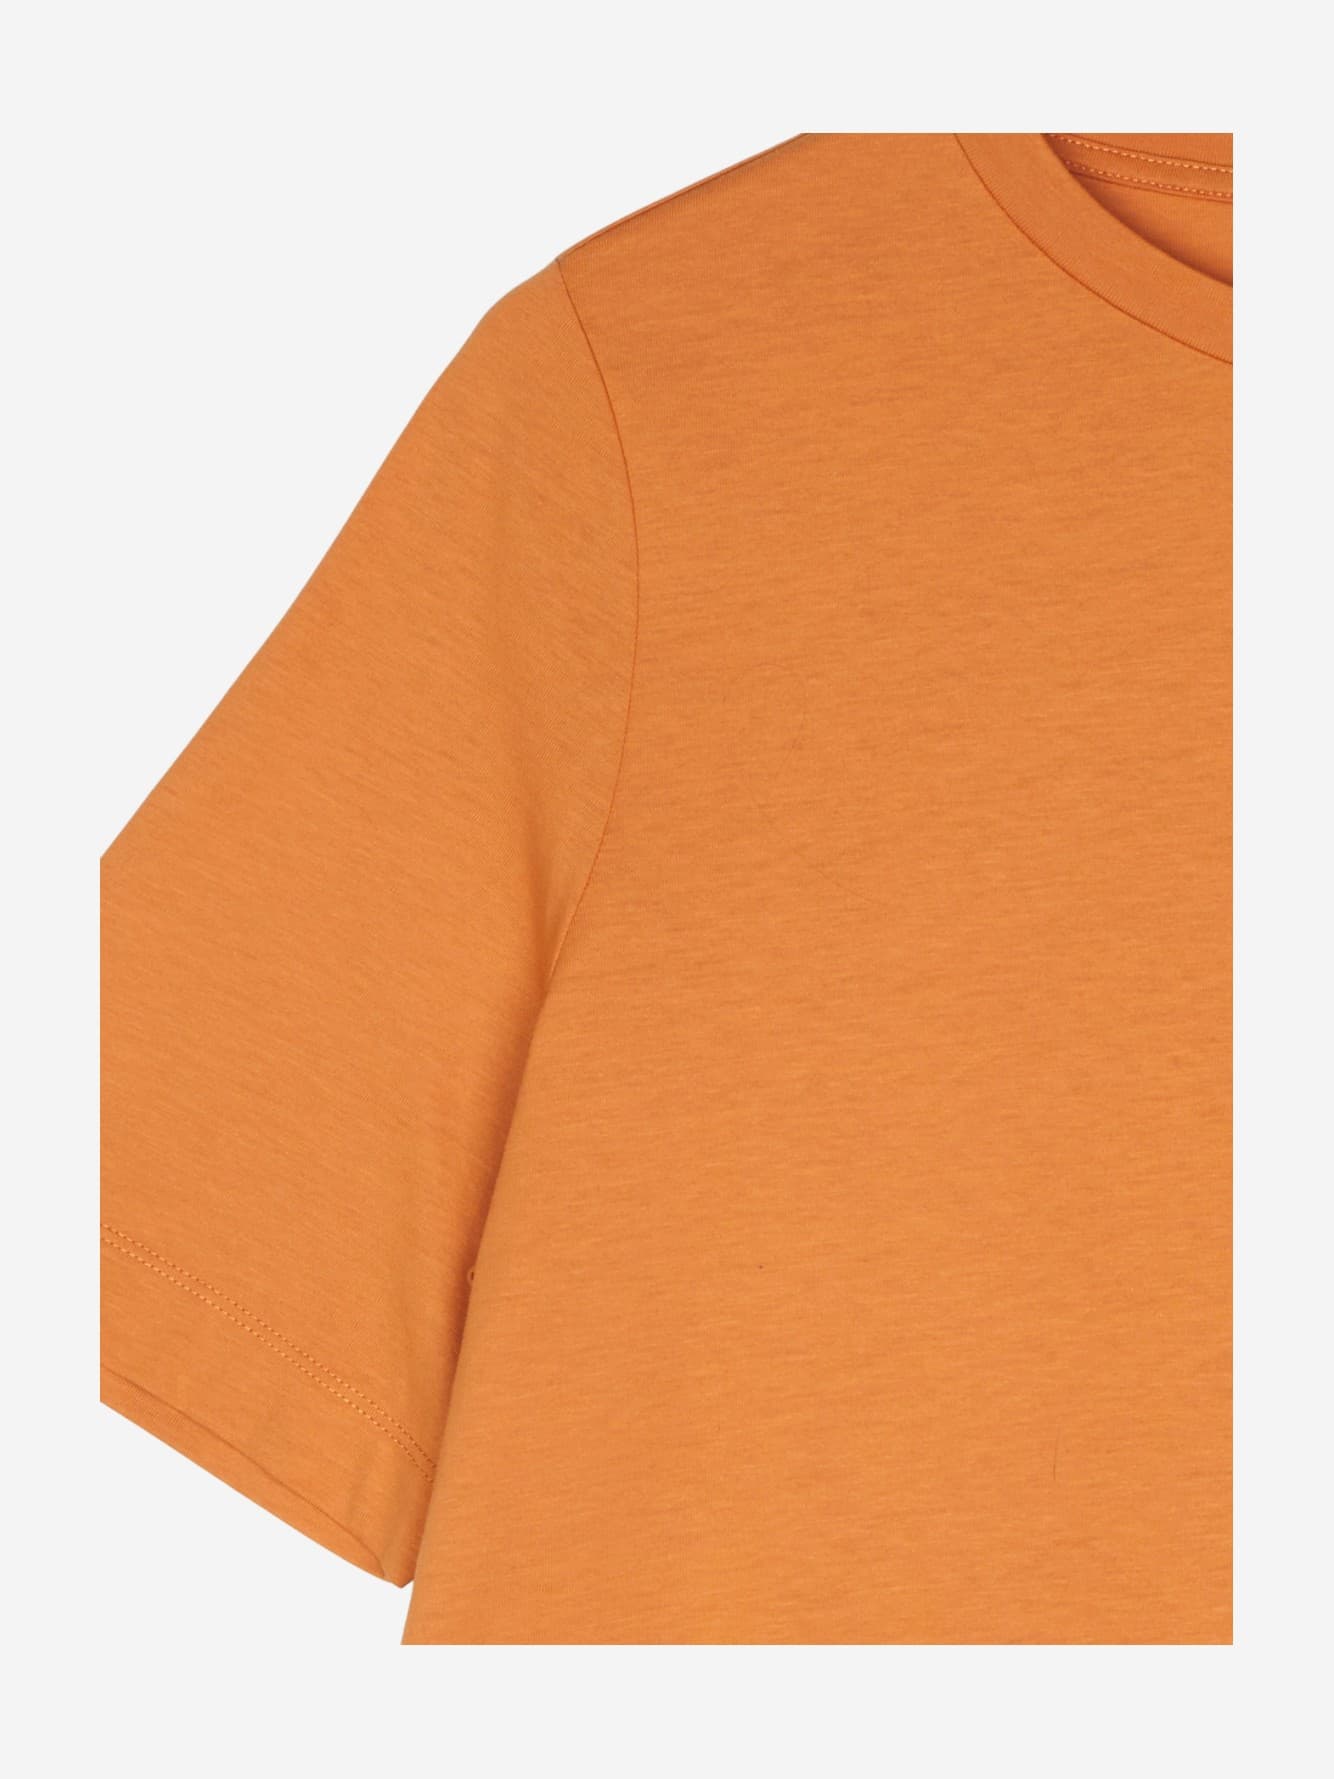 women Tops & T-Shirts Women / Shirts / T-Shirt Orange